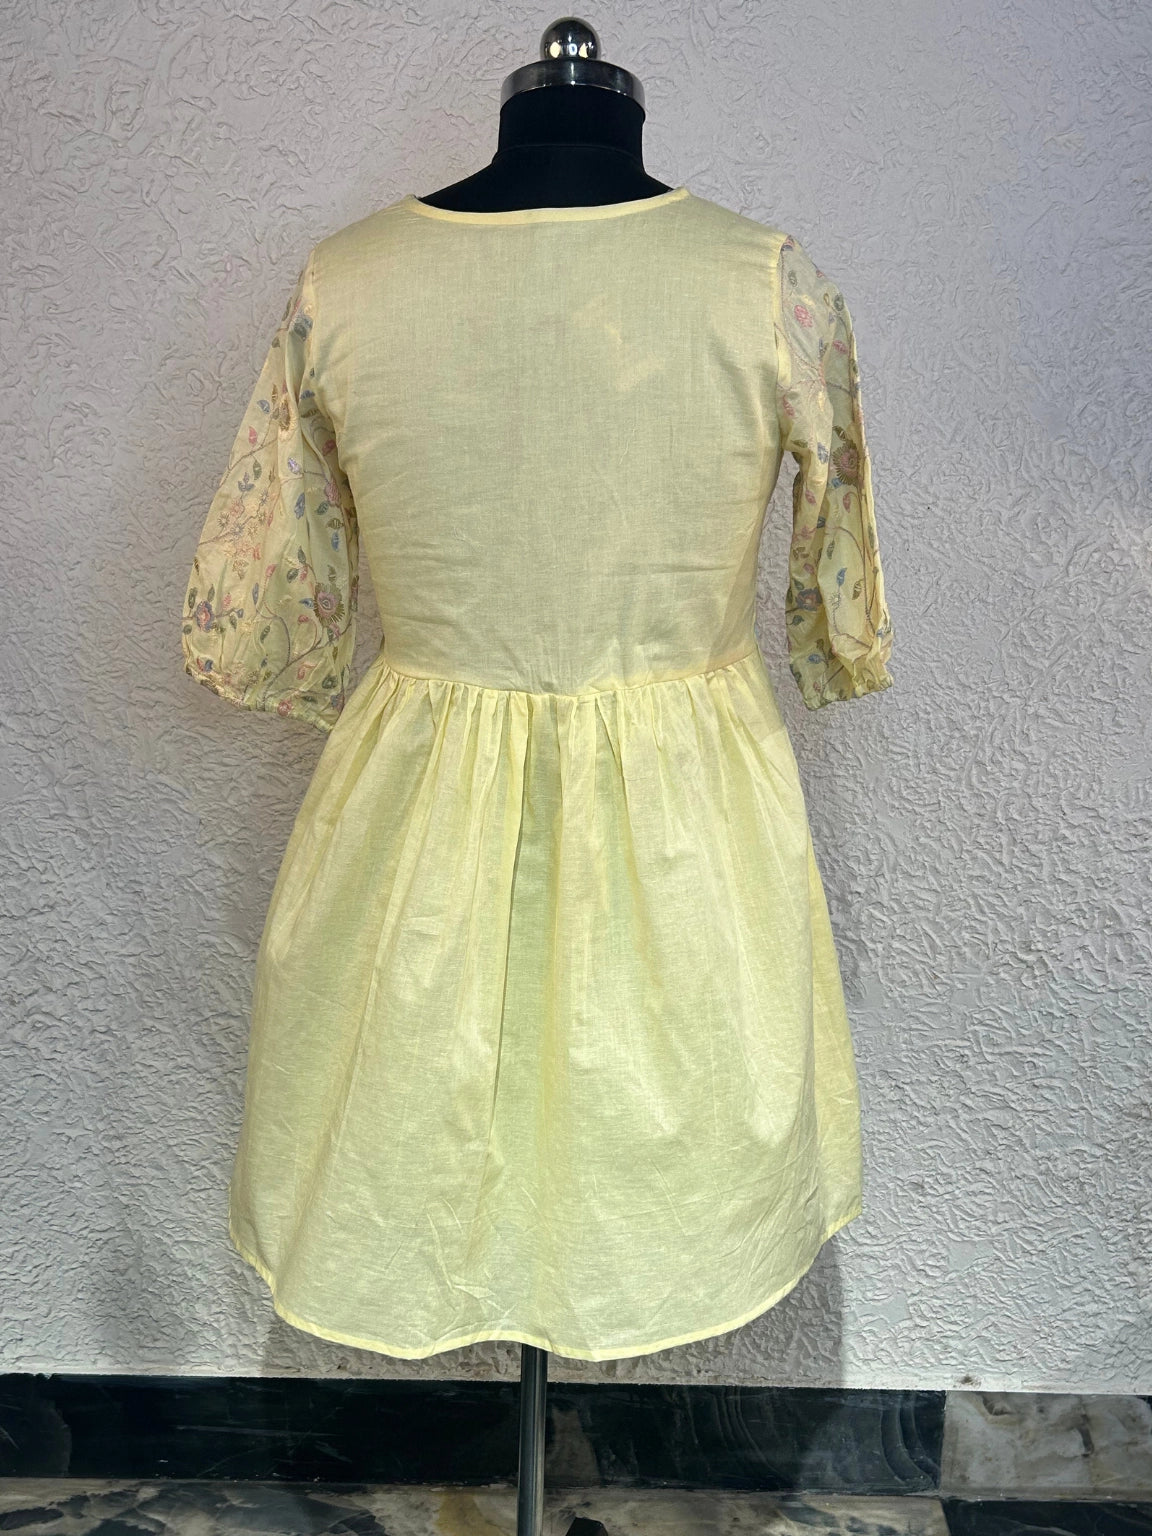 Buttercup Yellow Cotton Skirt